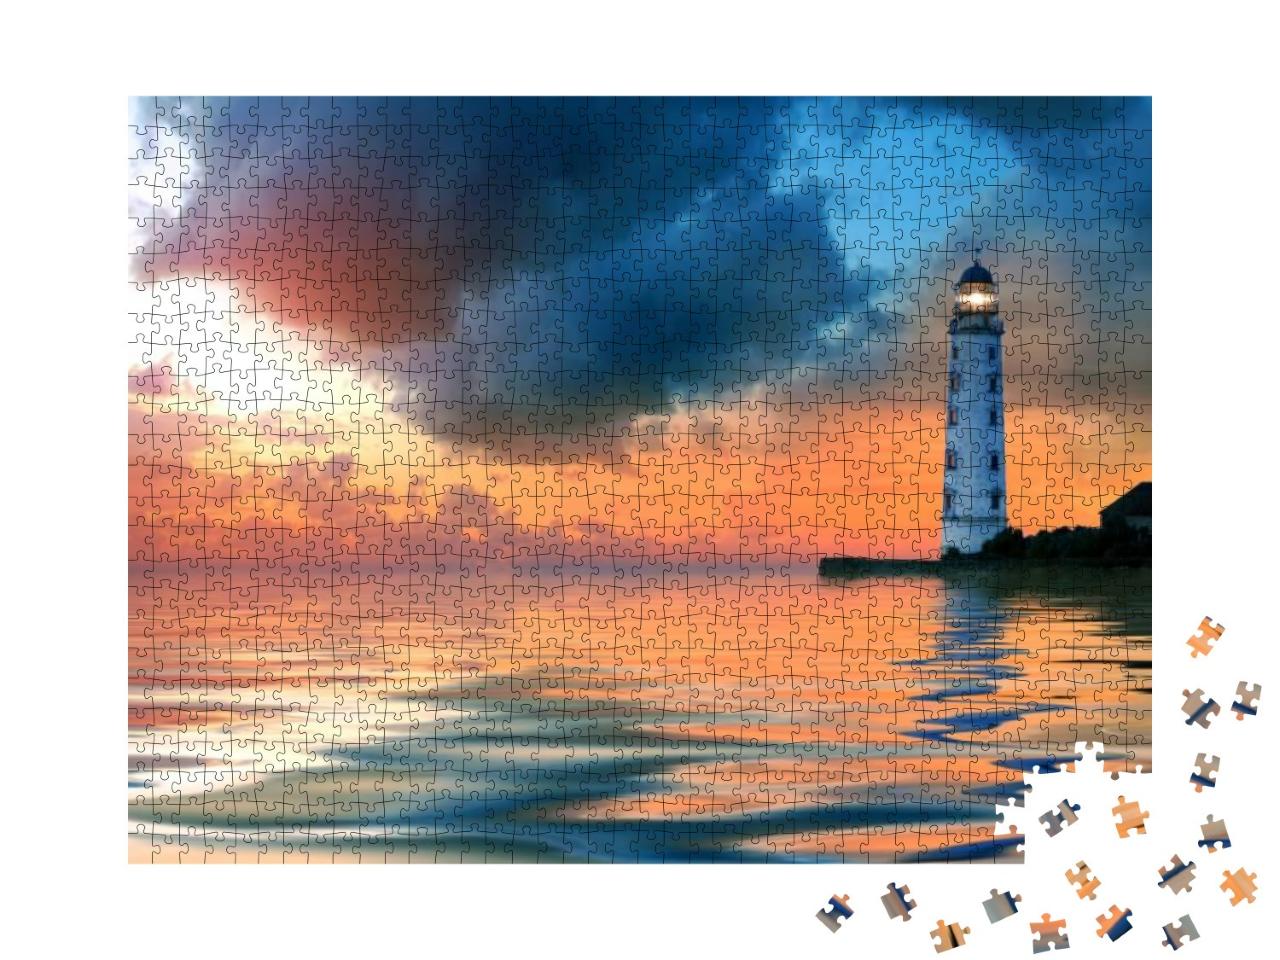 Puzzle 1000 Teile „Wunderschöner Sonnenuntergang am Leuchtturm bei ruhiger See“